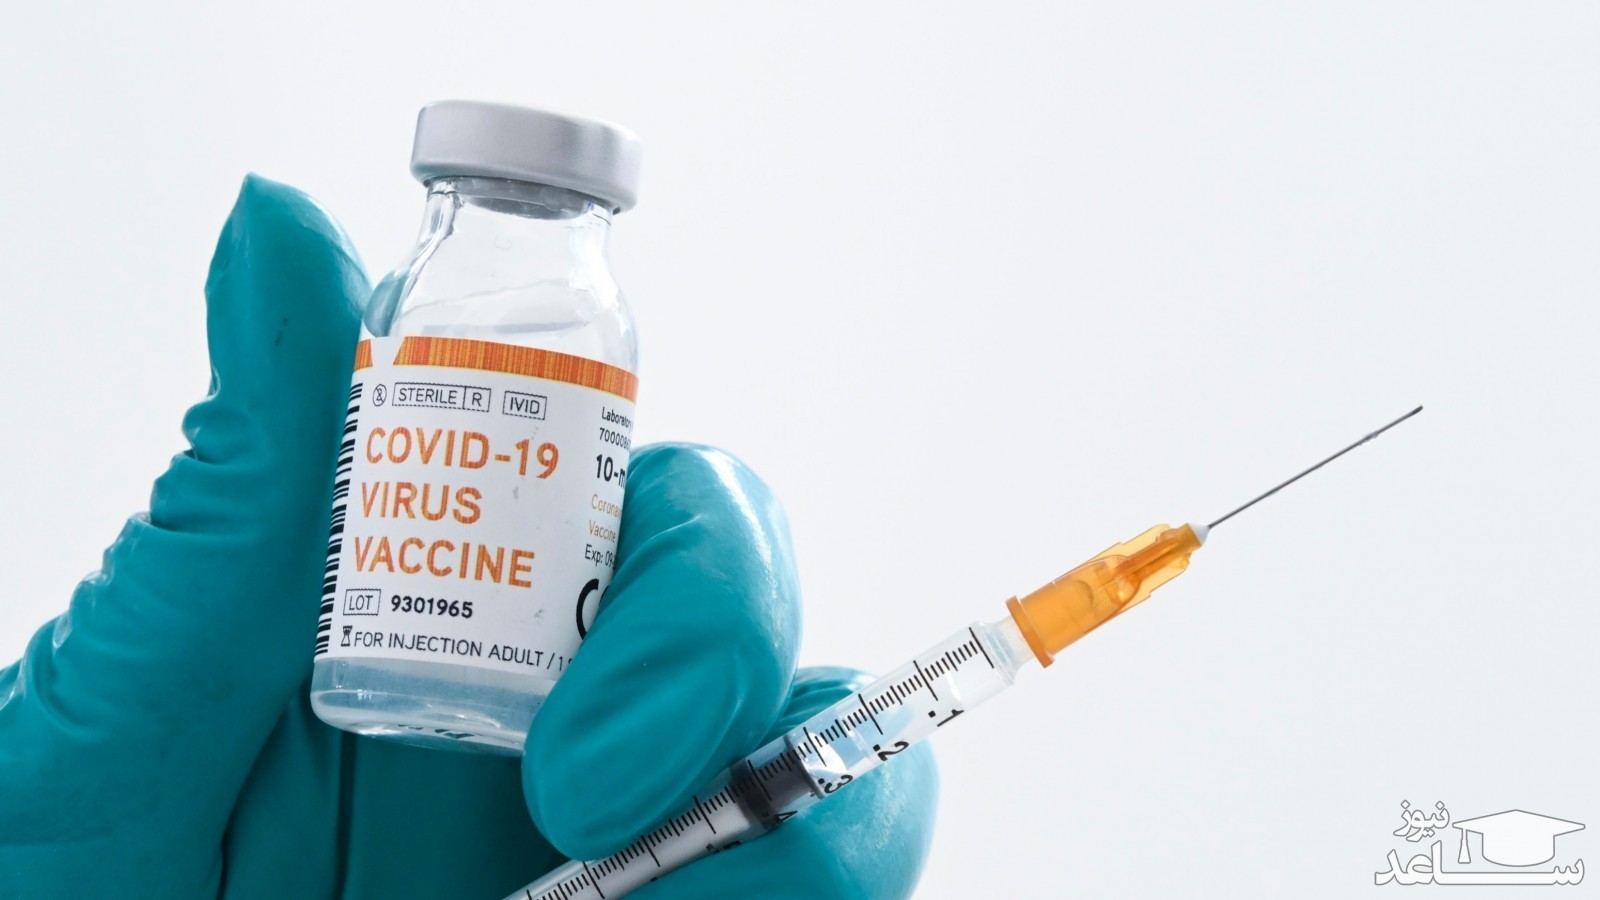 دانستنی های لازم در خصوص واکسن کووید-19